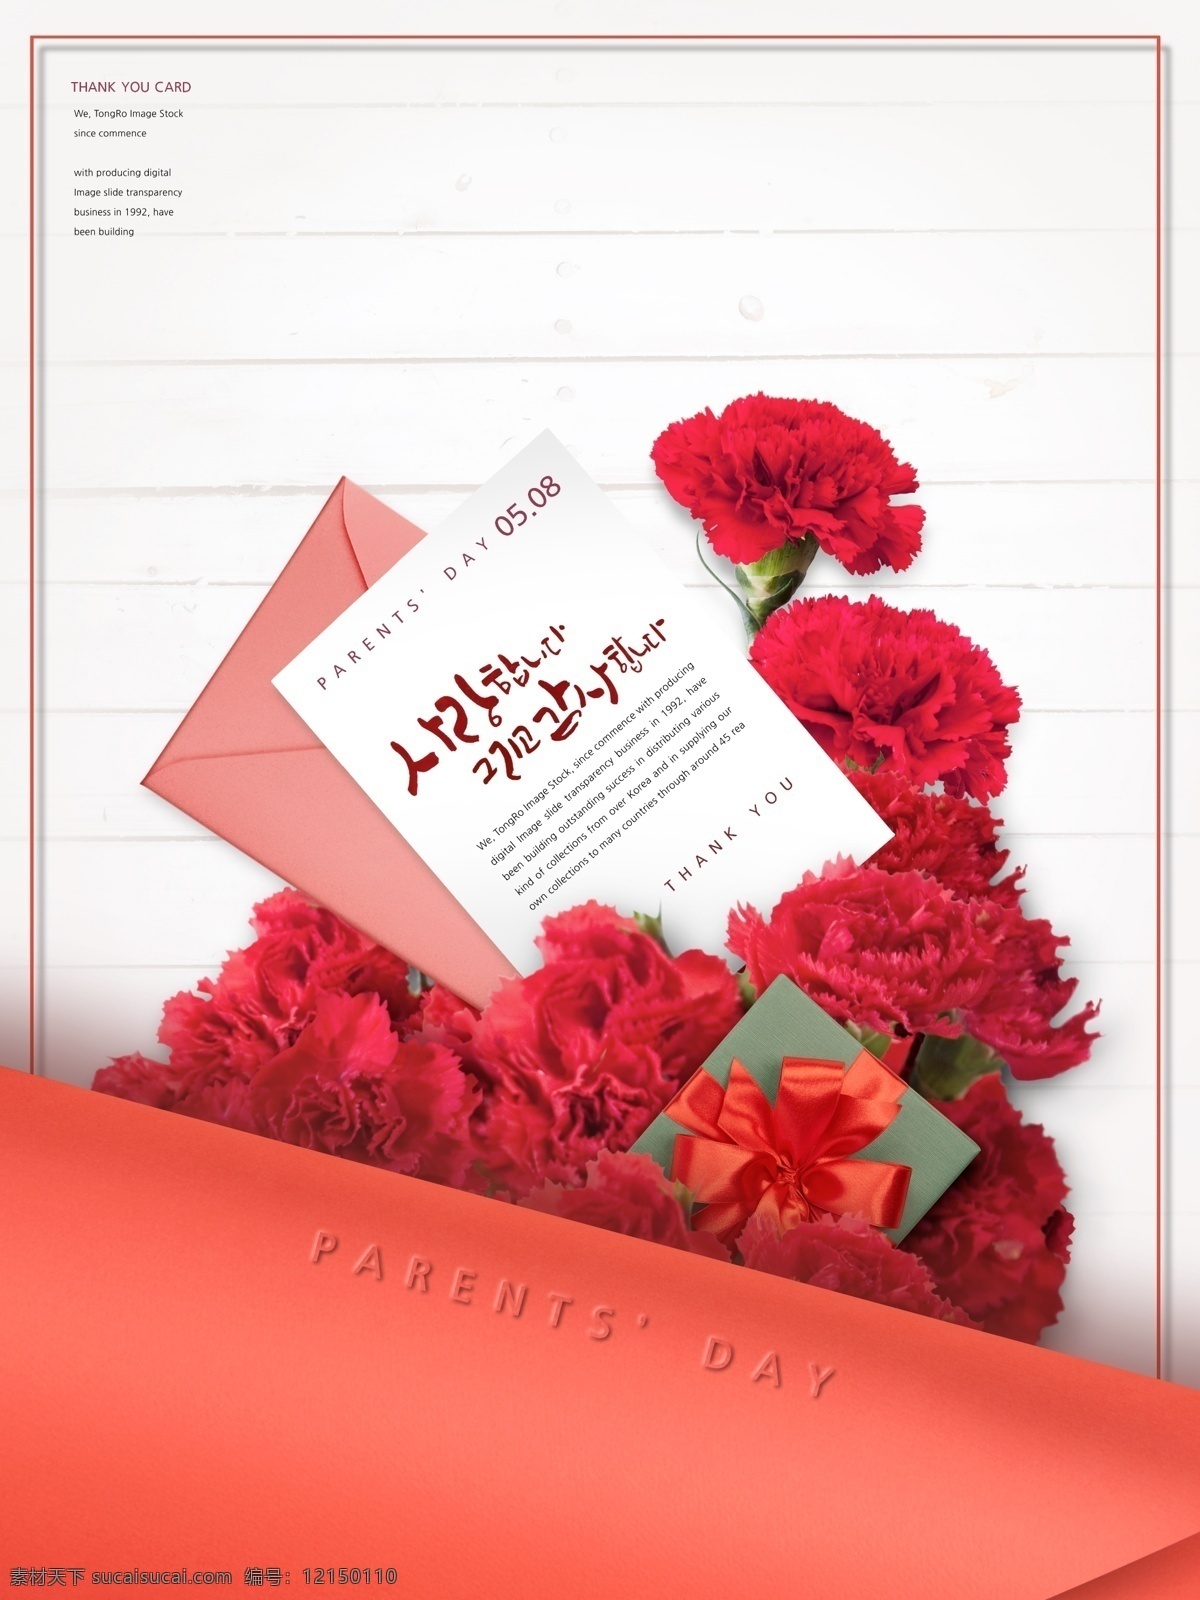 父亲节元素 父亲节素材 父亲节礼物 父亲节设计 红色康乃馨 鲜花 红色花朵 礼物 礼物盒 丝带 卡片信封 父亲节